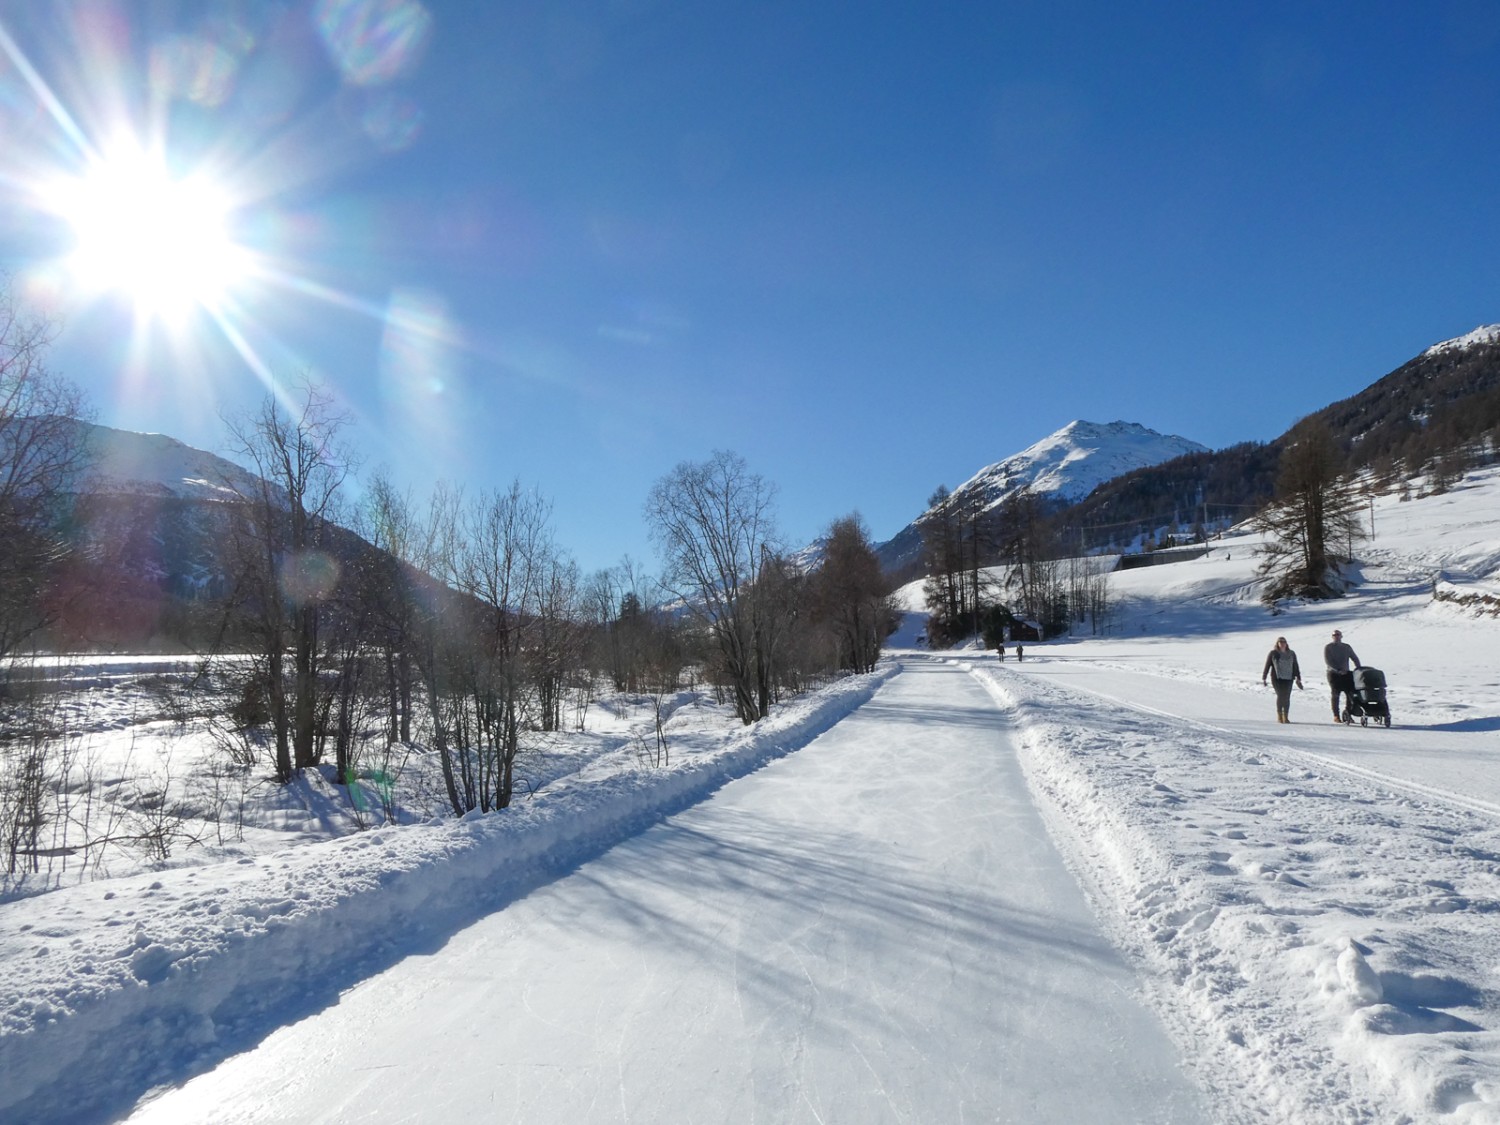 Für Kufenfreaks der Eisweg, für Winterwanderer der planierte Weg. Bilder: Rémy Kappeler 